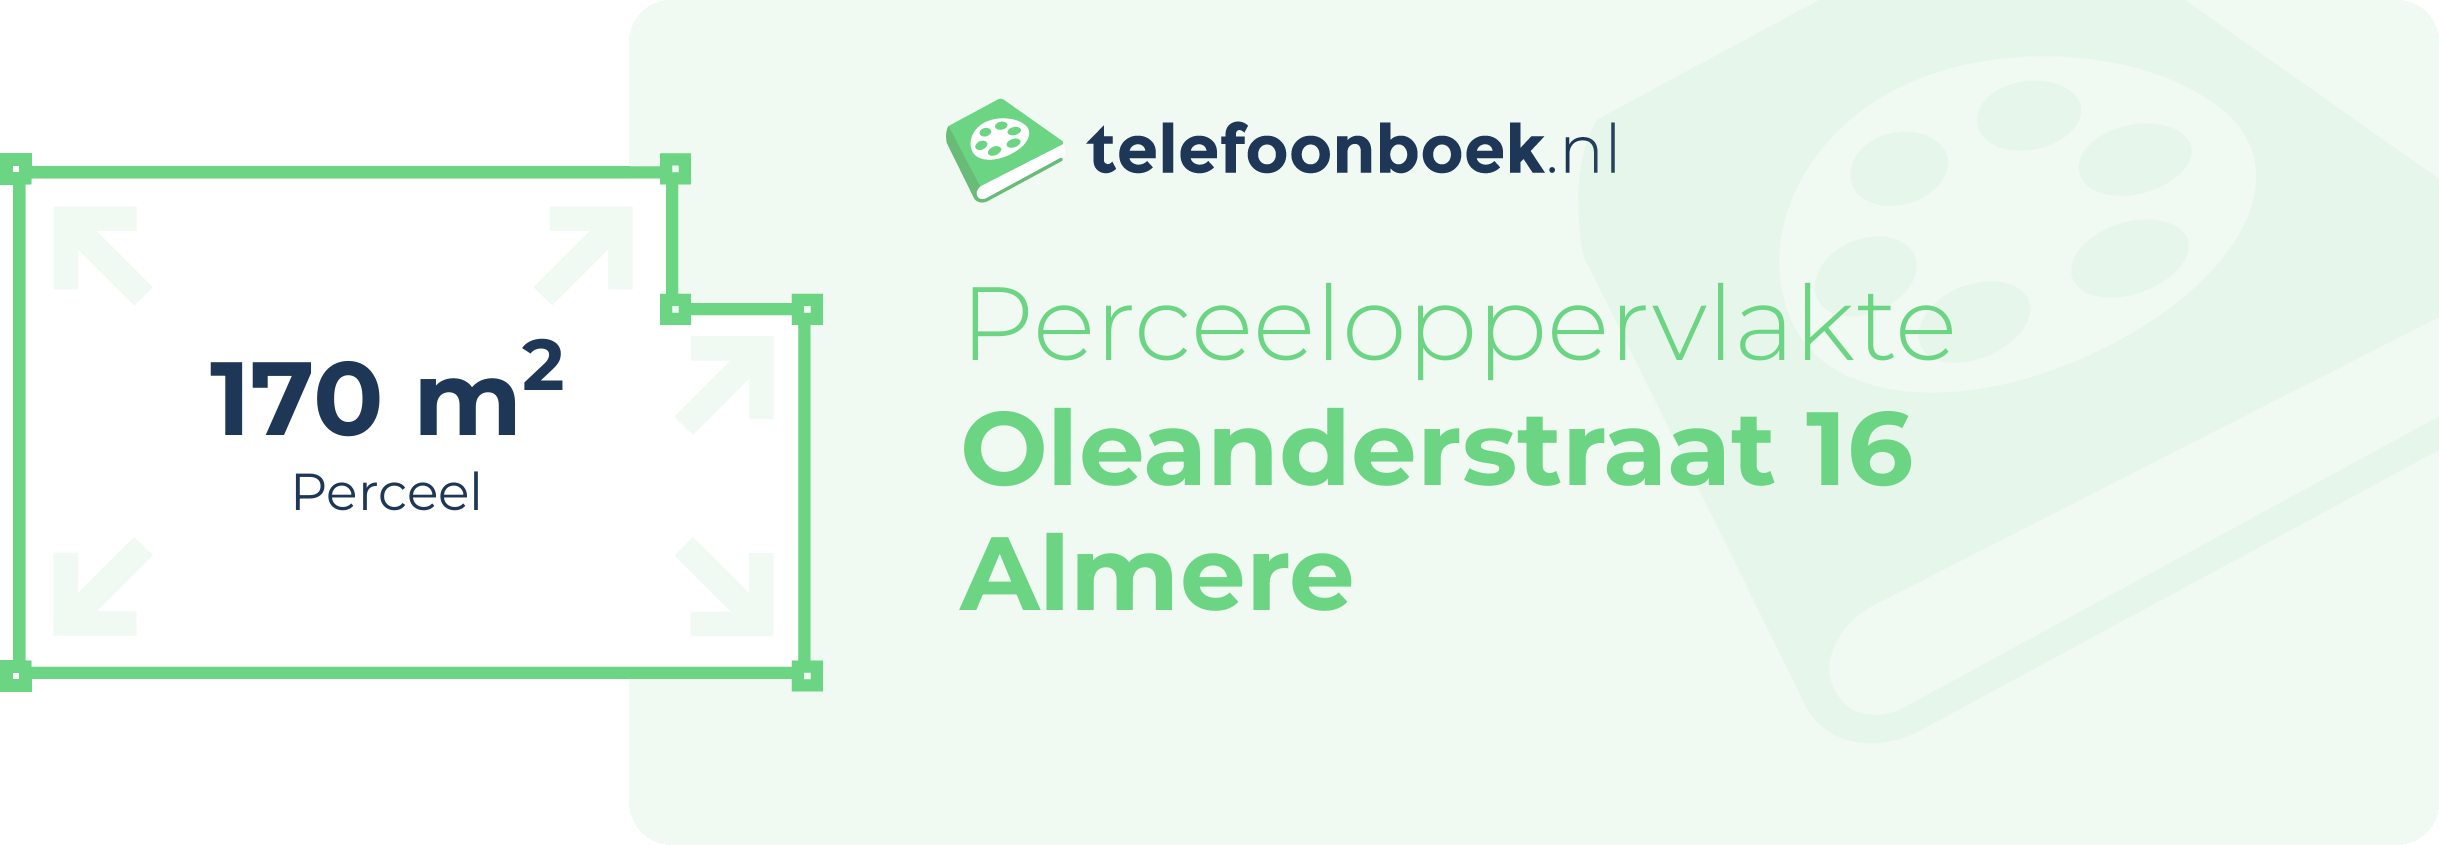 Perceeloppervlakte Oleanderstraat 16 Almere